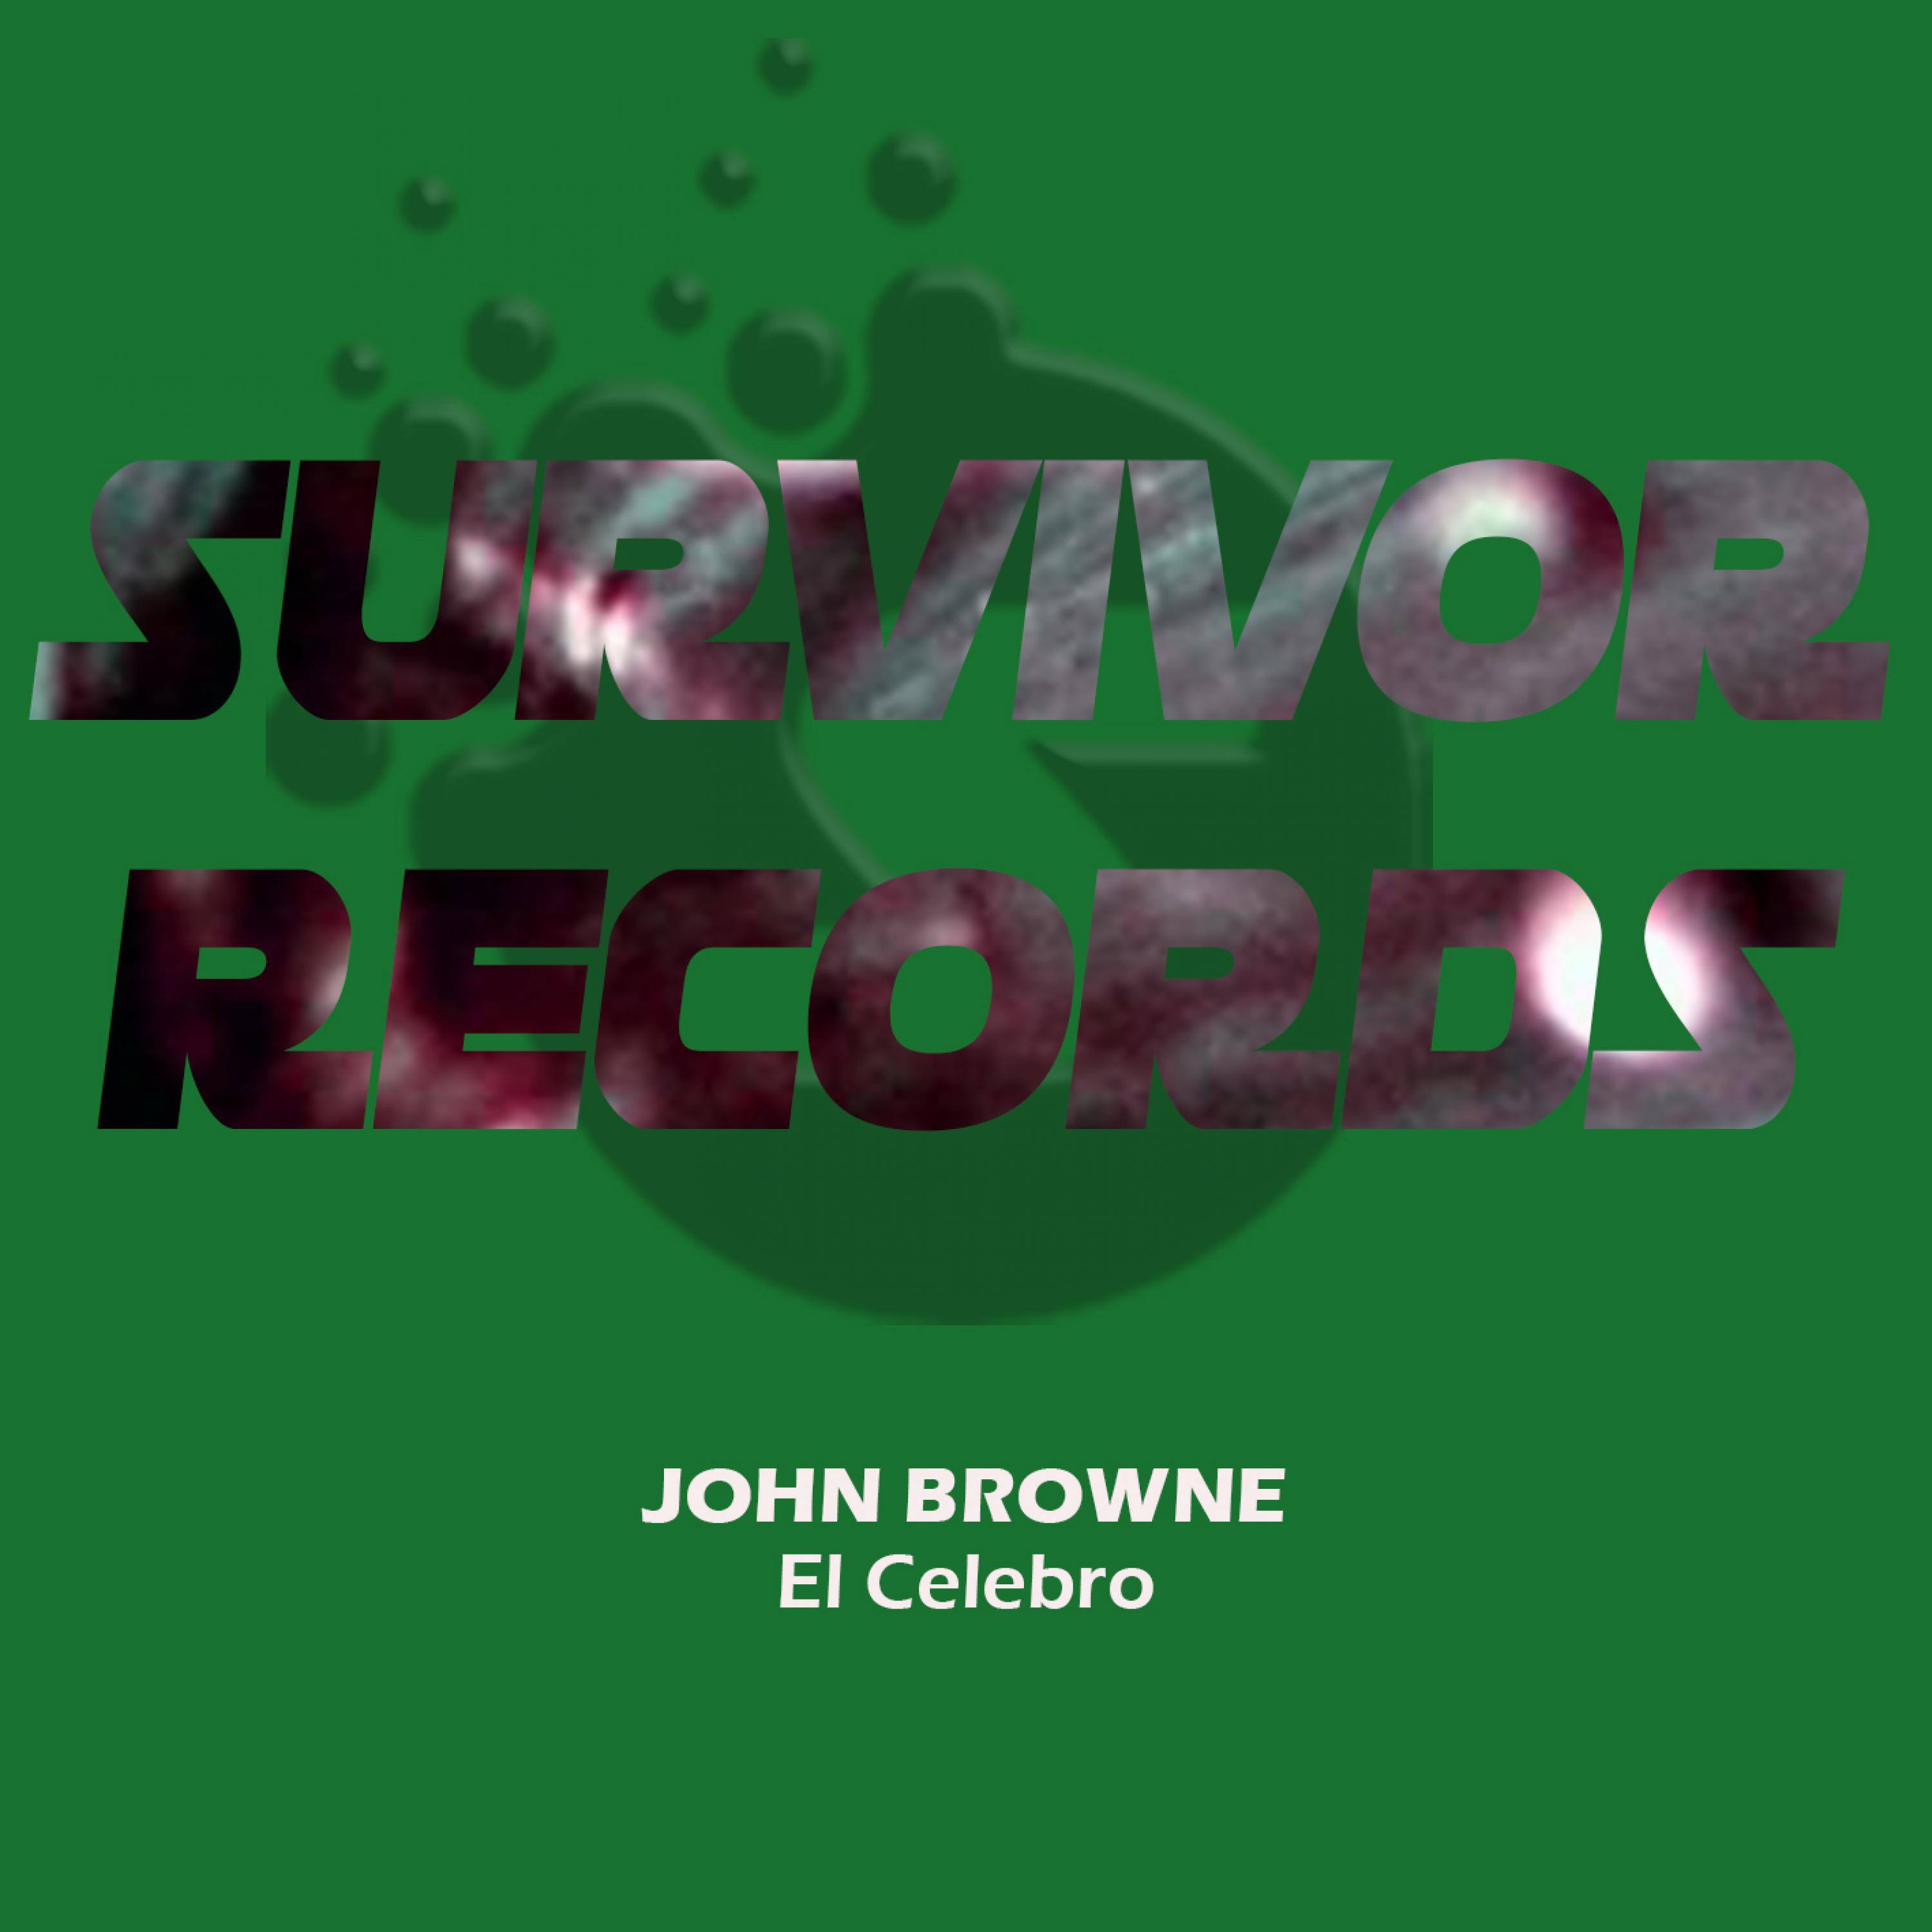 John Browne - Iron (Original Mix)